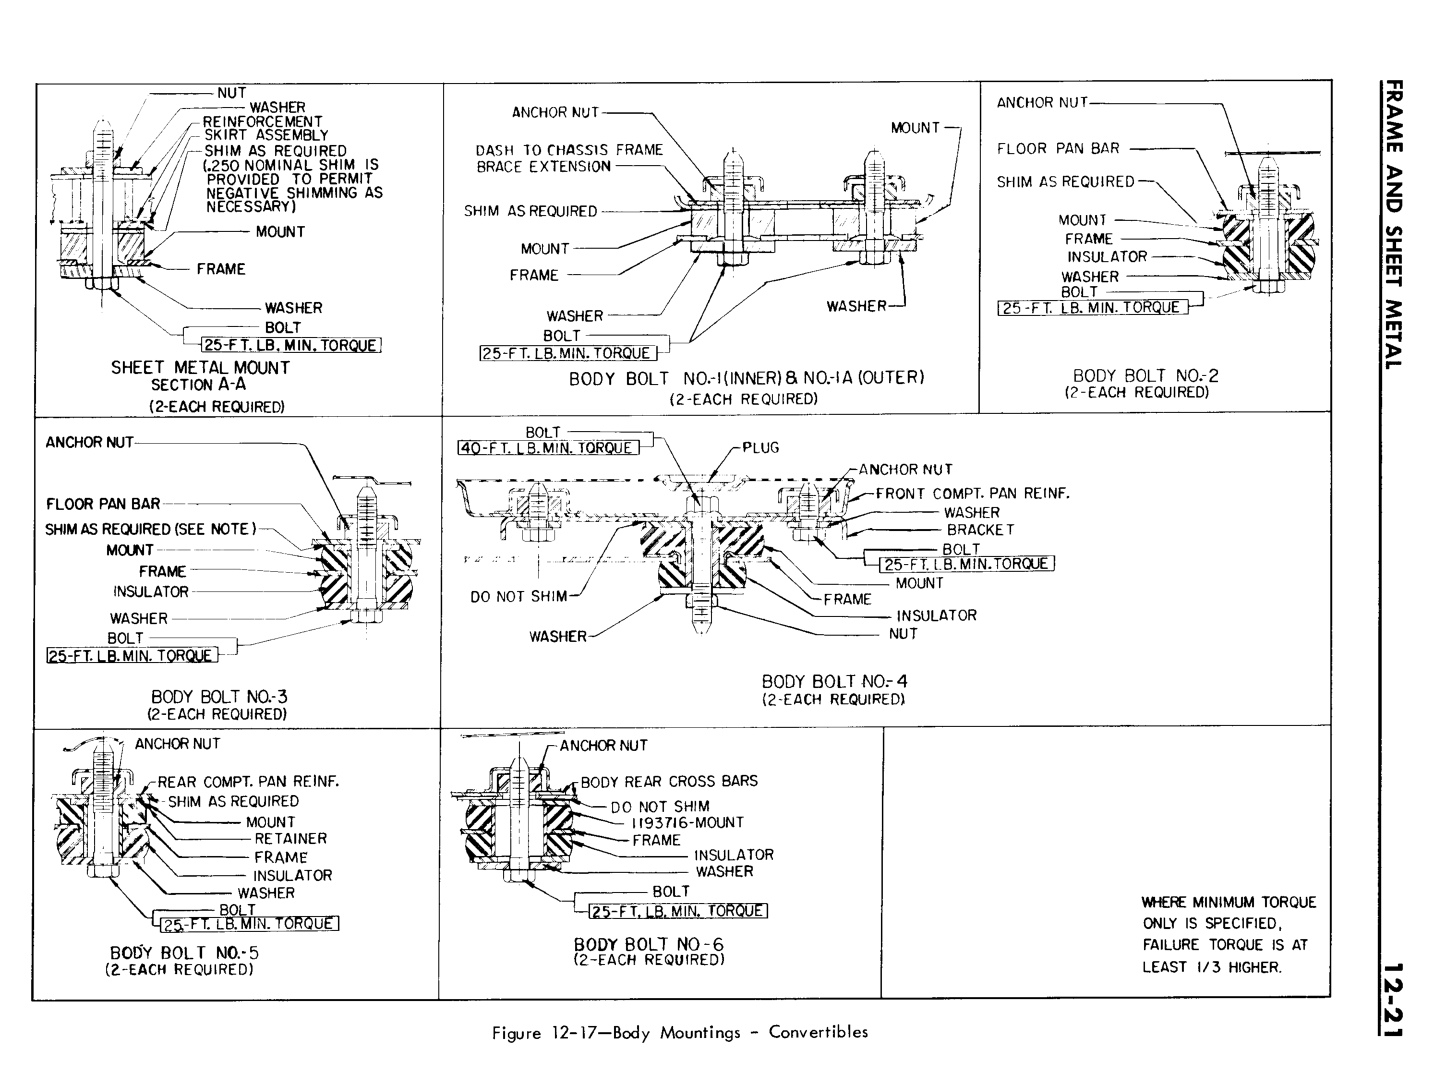 n_12 1961 Buick Shop Manual - Frame & Sheet Metal-021-021.jpg